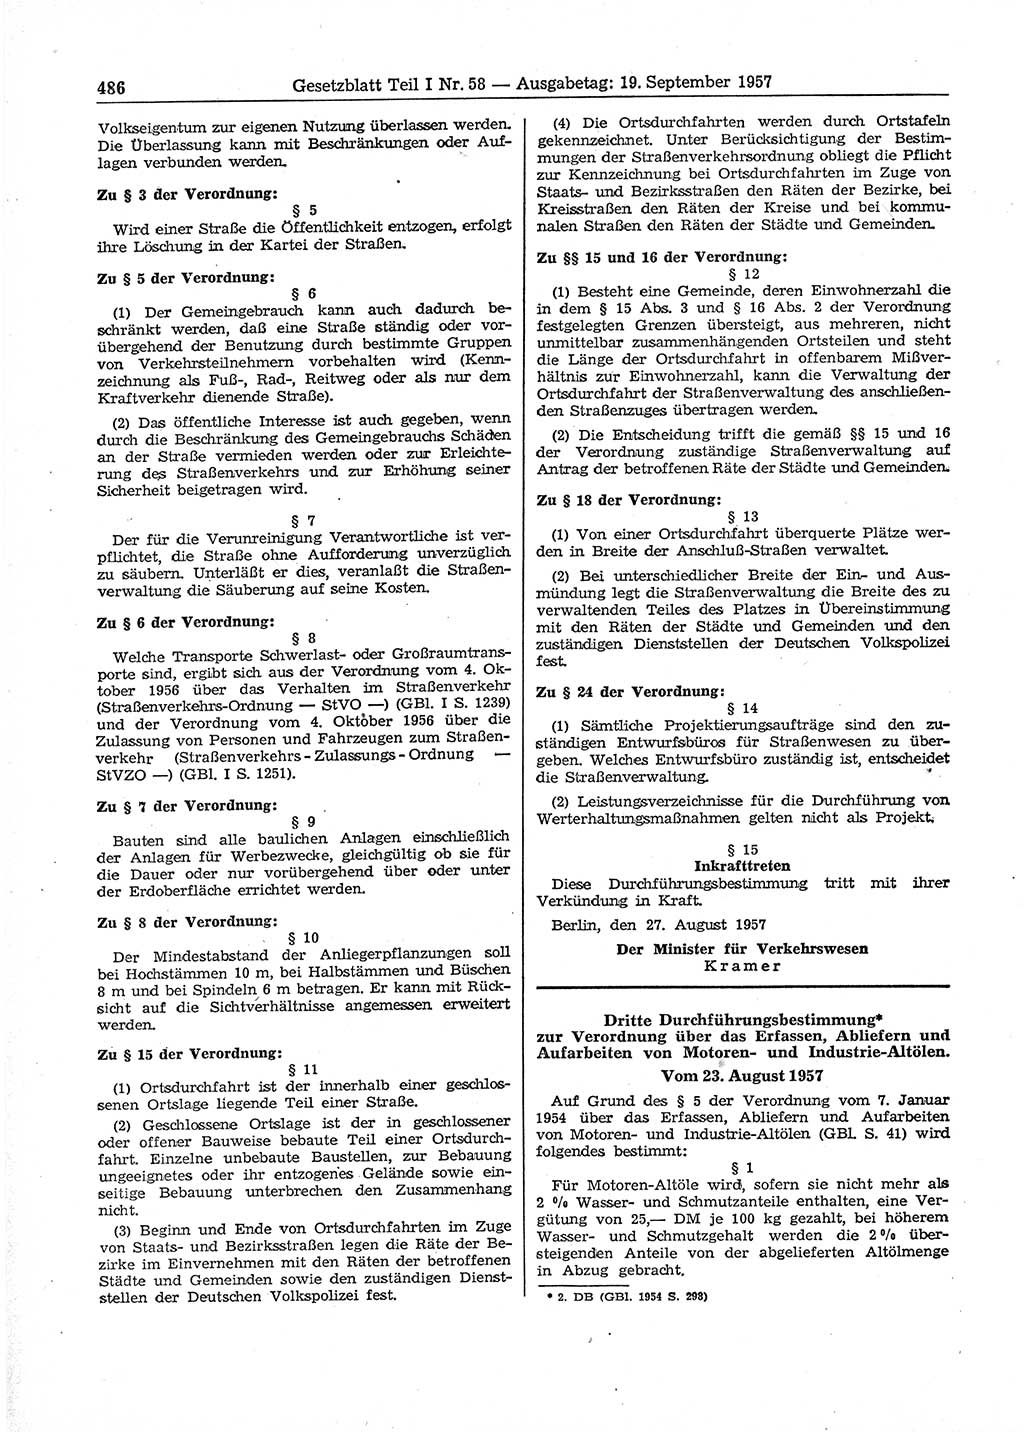 Gesetzblatt (GBl.) der Deutschen Demokratischen Republik (DDR) Teil Ⅰ 1957, Seite 486 (GBl. DDR Ⅰ 1957, S. 486)